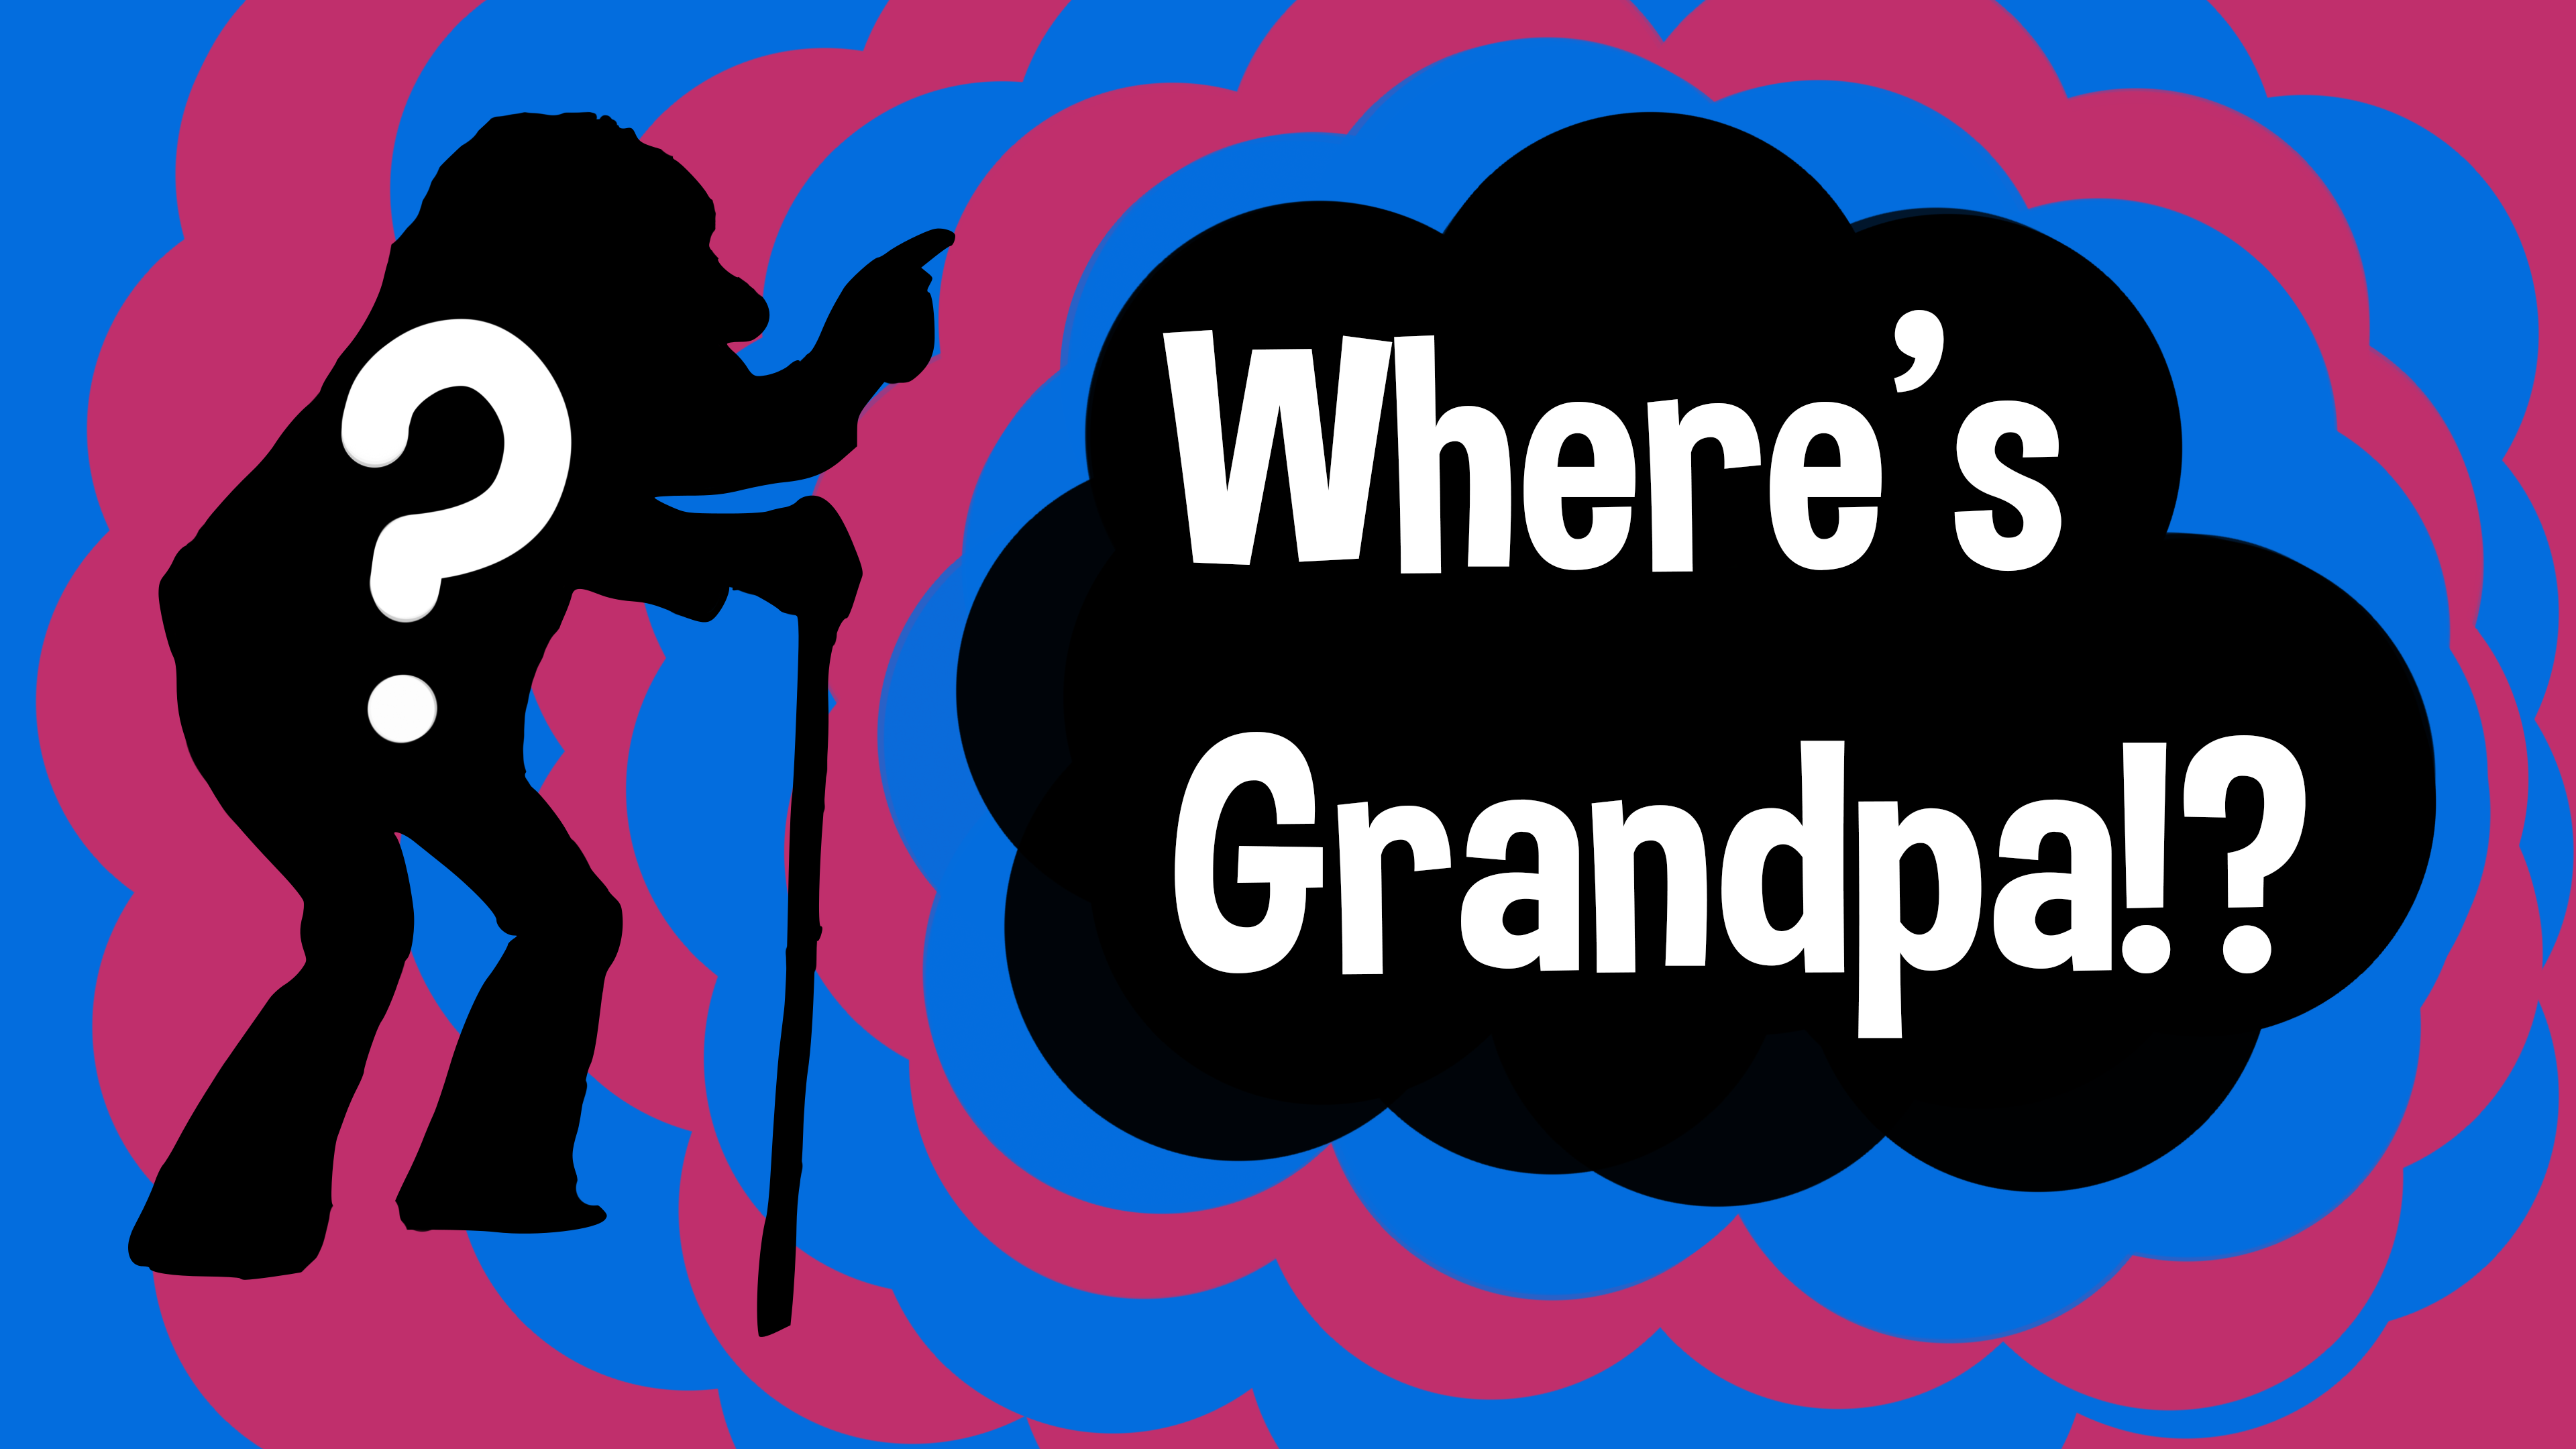 Where's Grandpa?